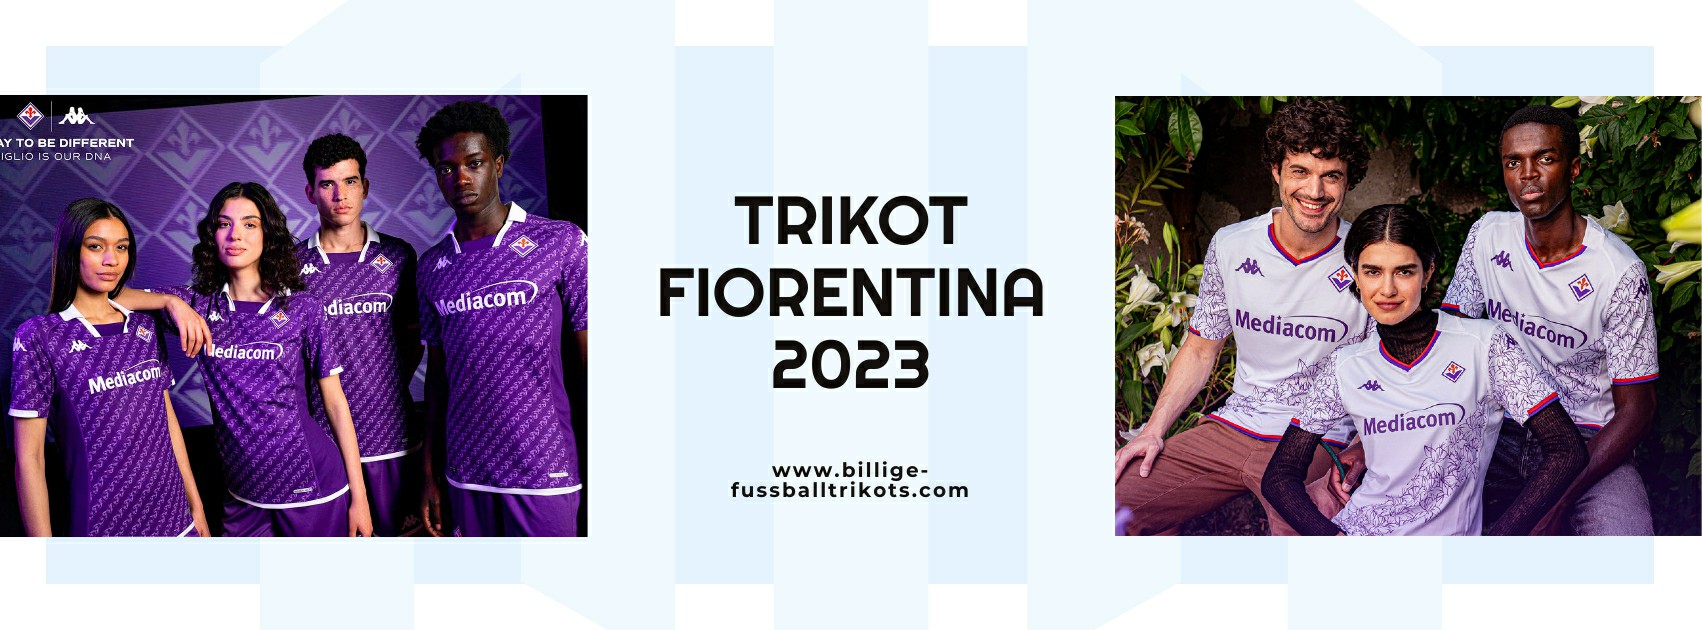 Fiorentina Trikot 2023-2024